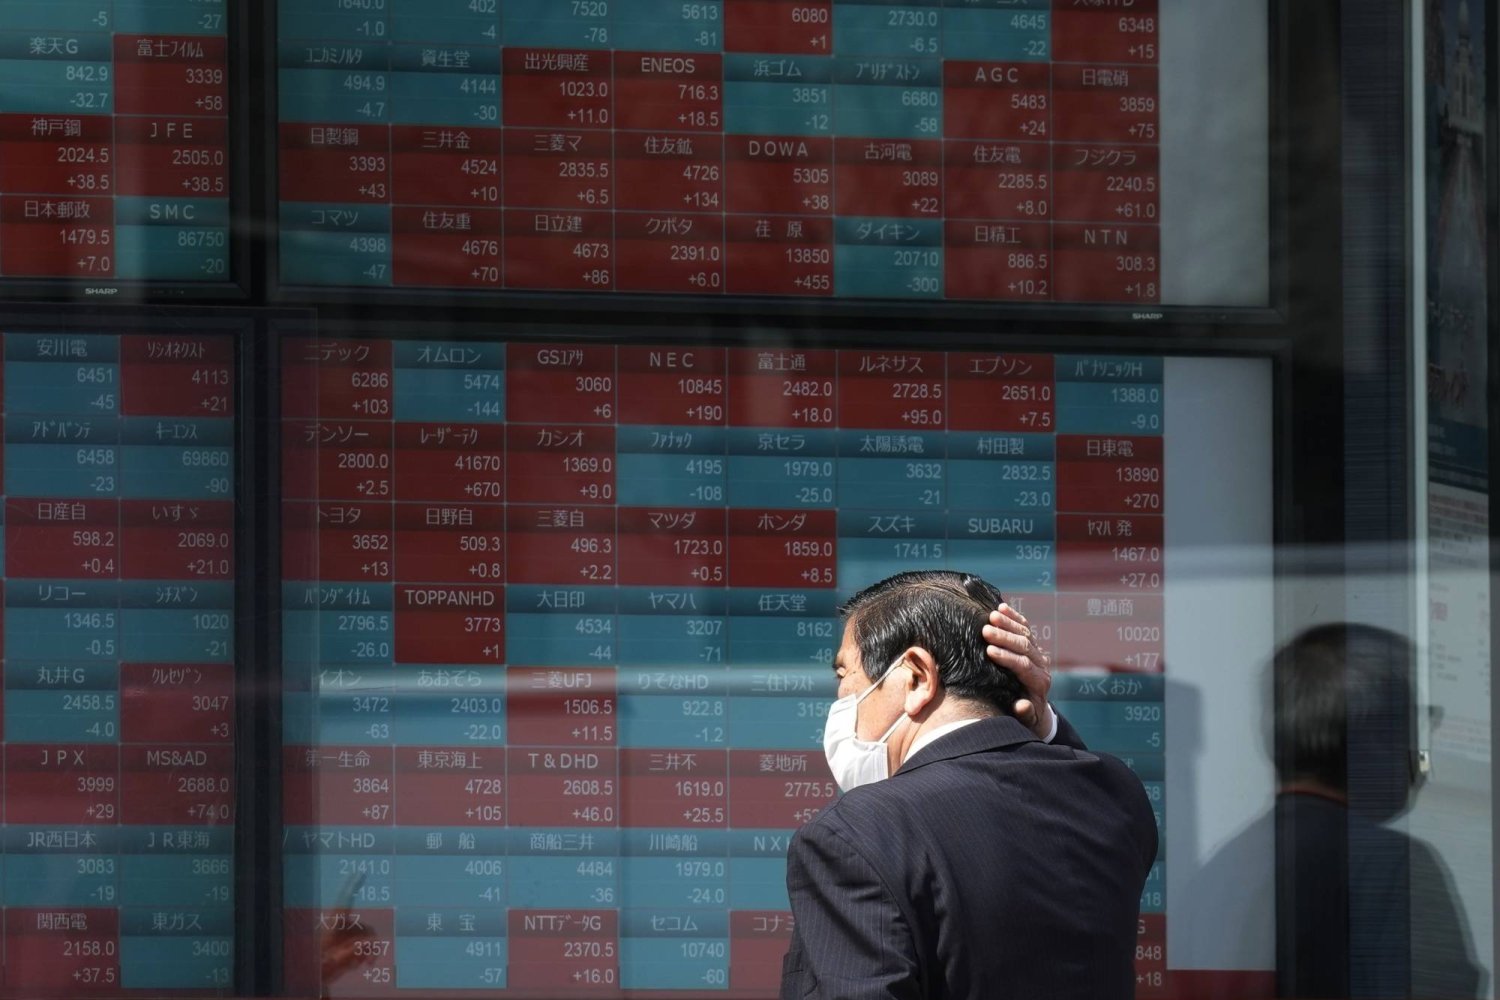 رجل يتابع تحركات الأسهم على شاشة بمقر للتداول وسط العاصمة اليابانية طوكيو (أ.ب)